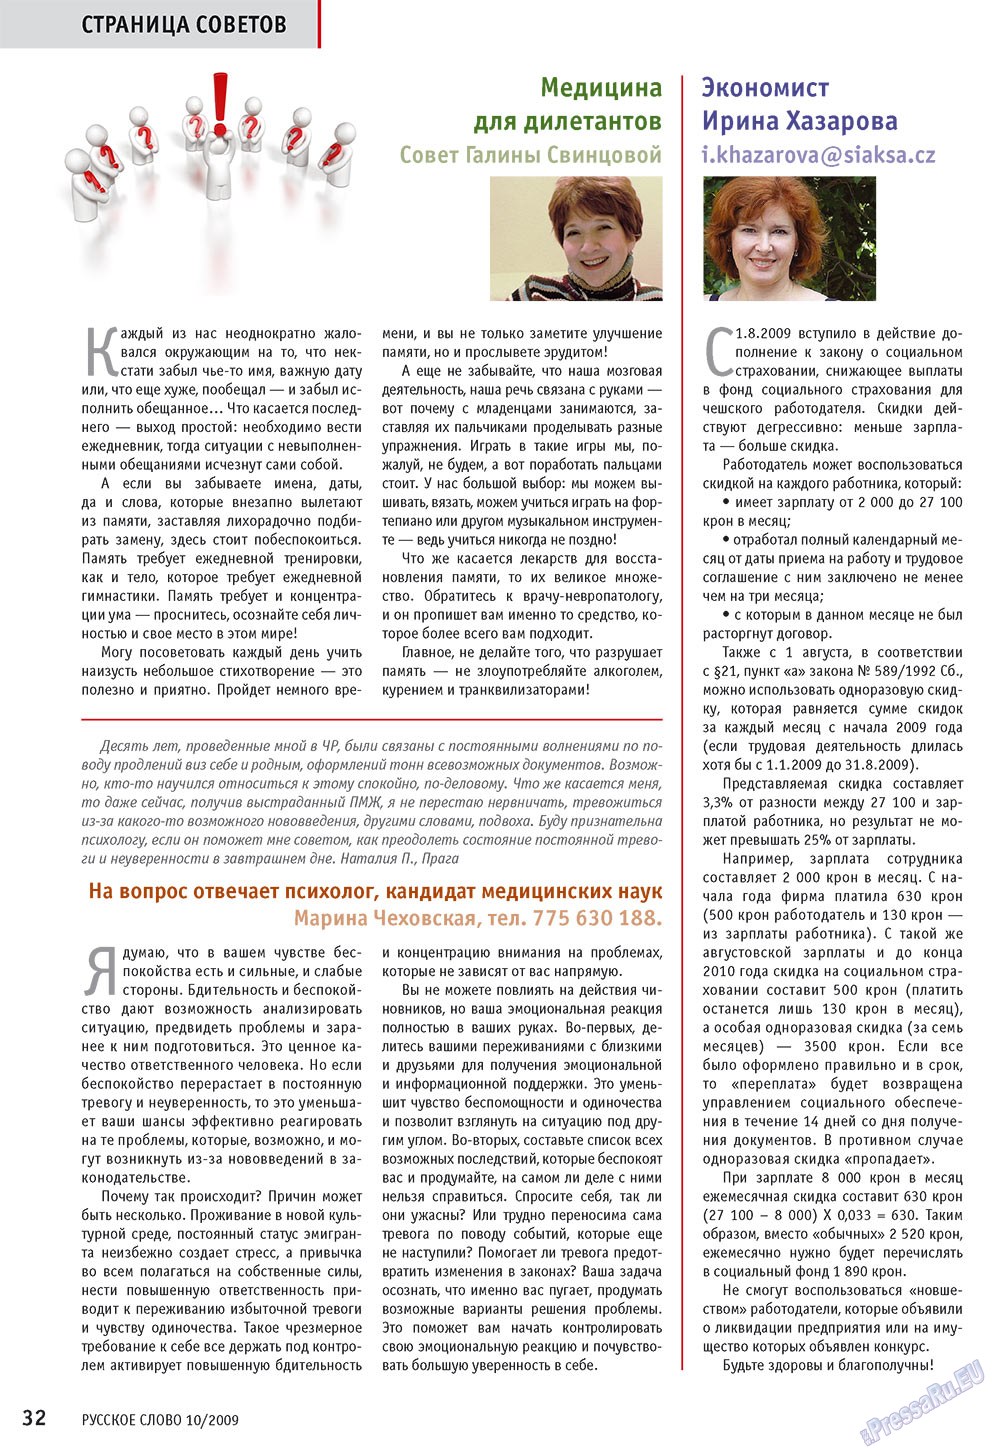 Русское слово (журнал). 2009 год, номер 10, стр. 34